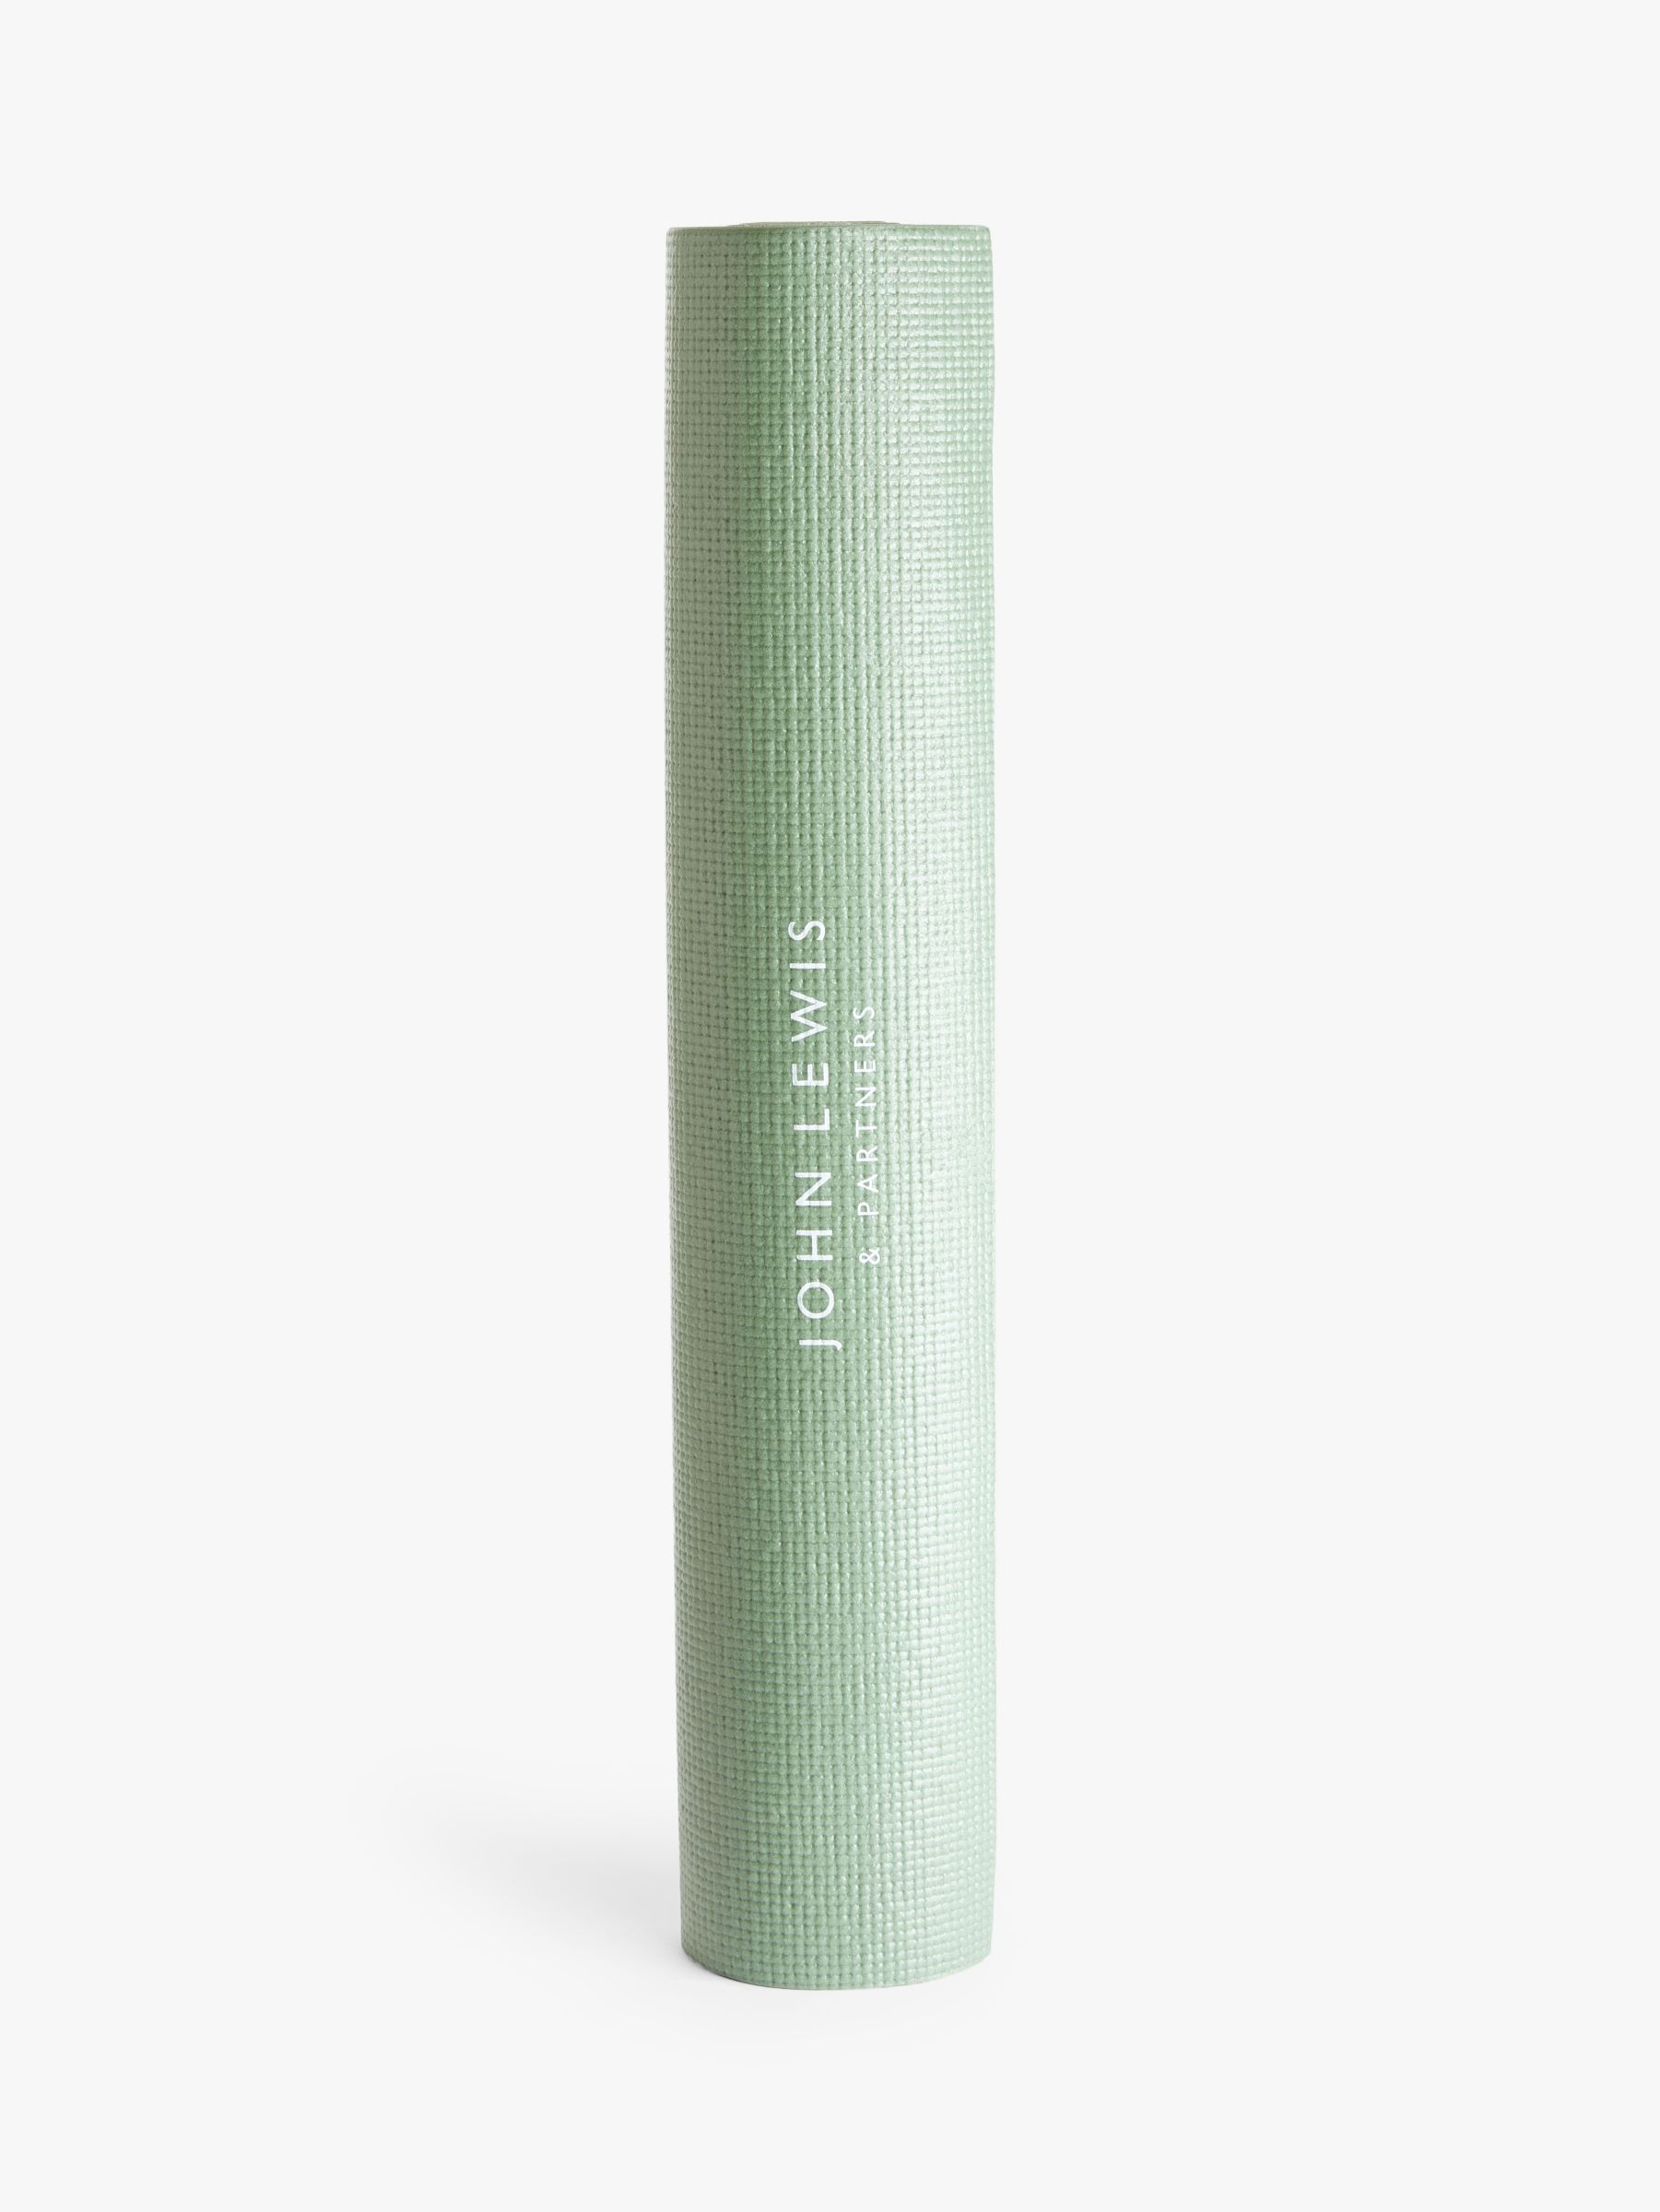 Gaiam Premium Citron Sundial 6mm Yoga Mat, Grey/Citron